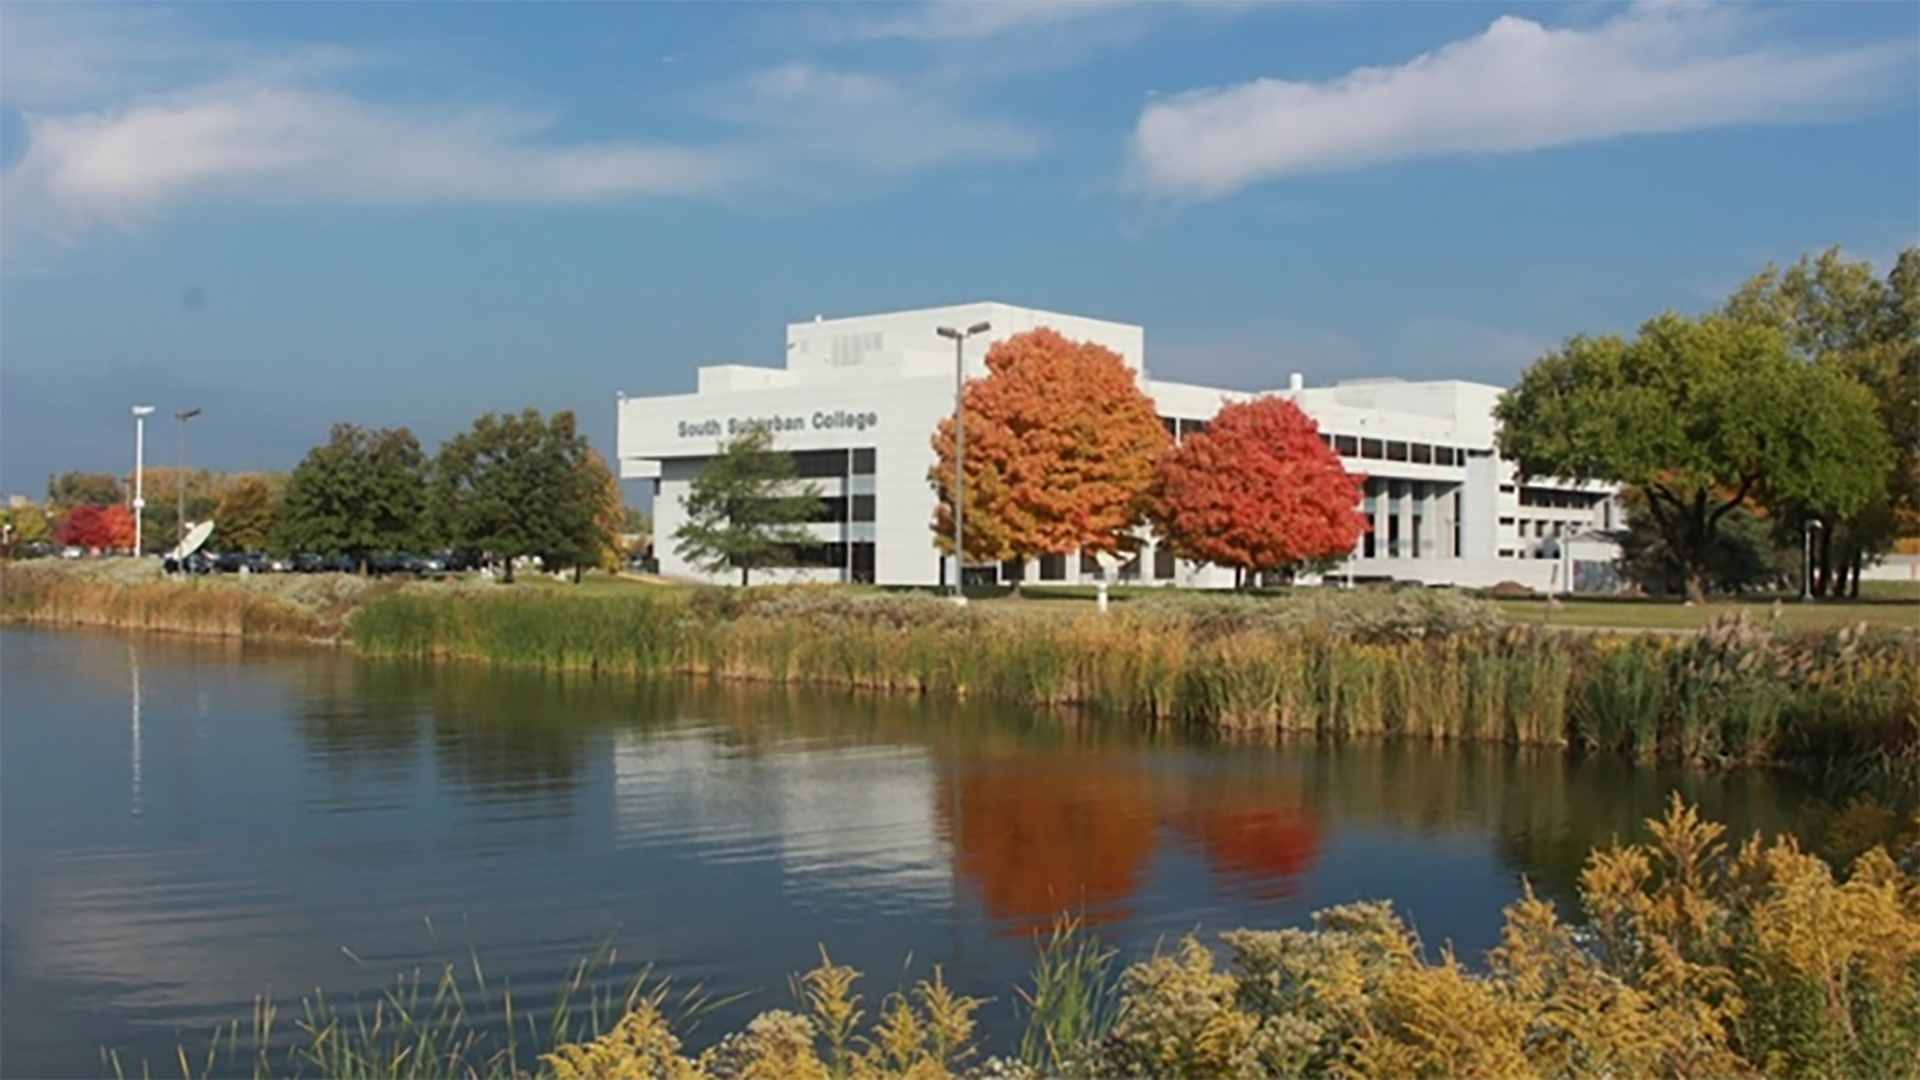 Main Campus exterior in autumn.